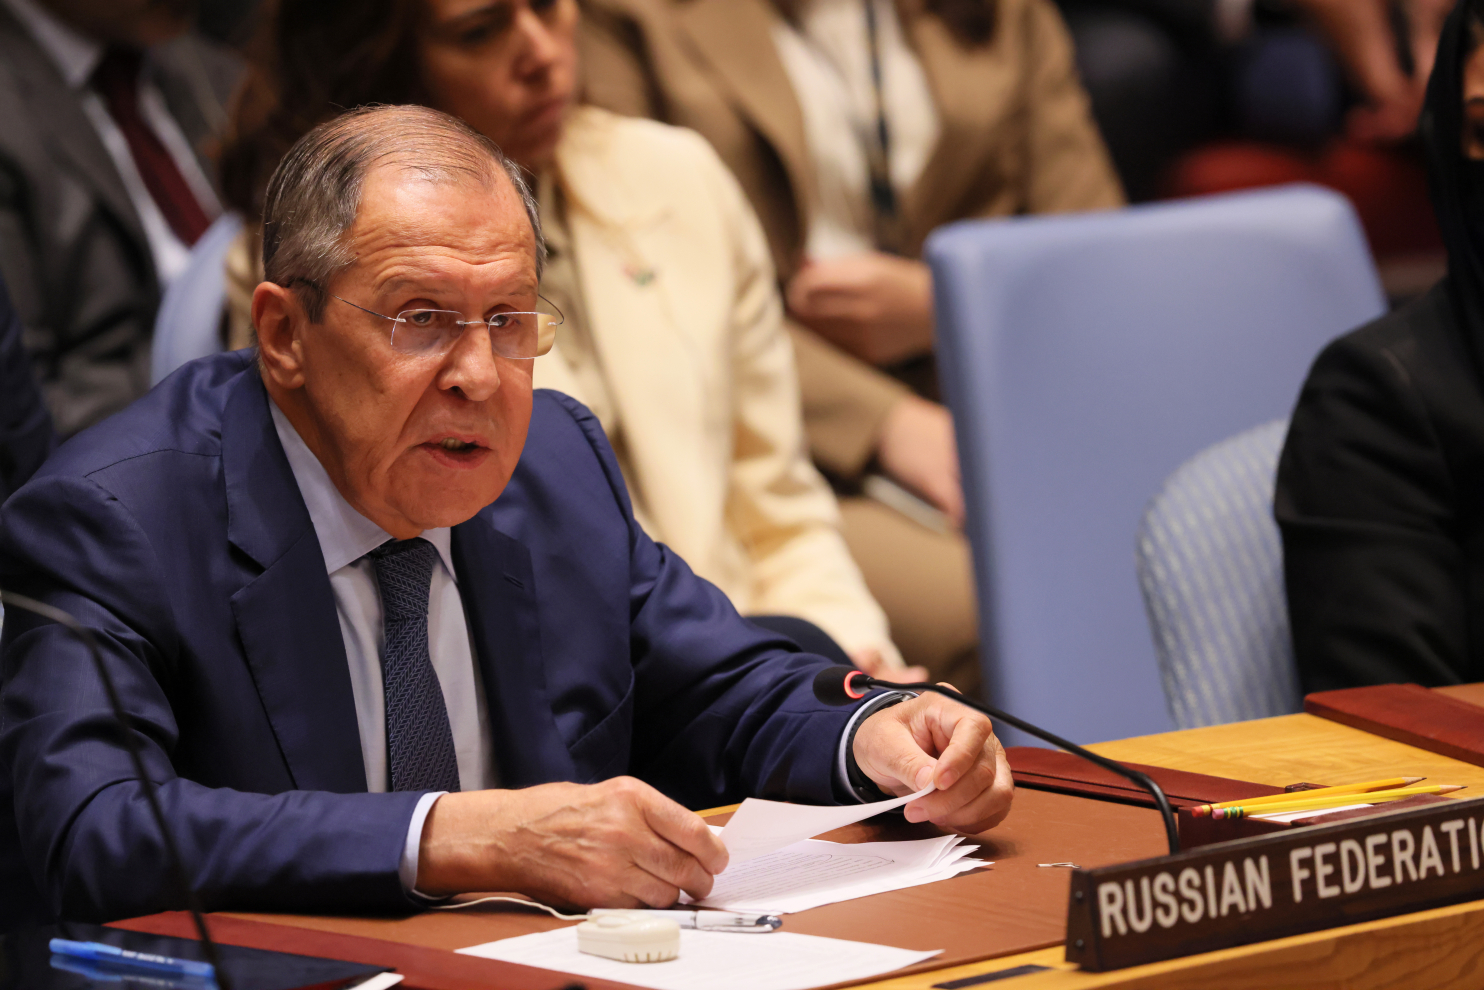 Ngoại trưởng Lavrov bảo vệ Nga tại cuộc họp 'đầy giận dữ' của Liên Hợp Quốc